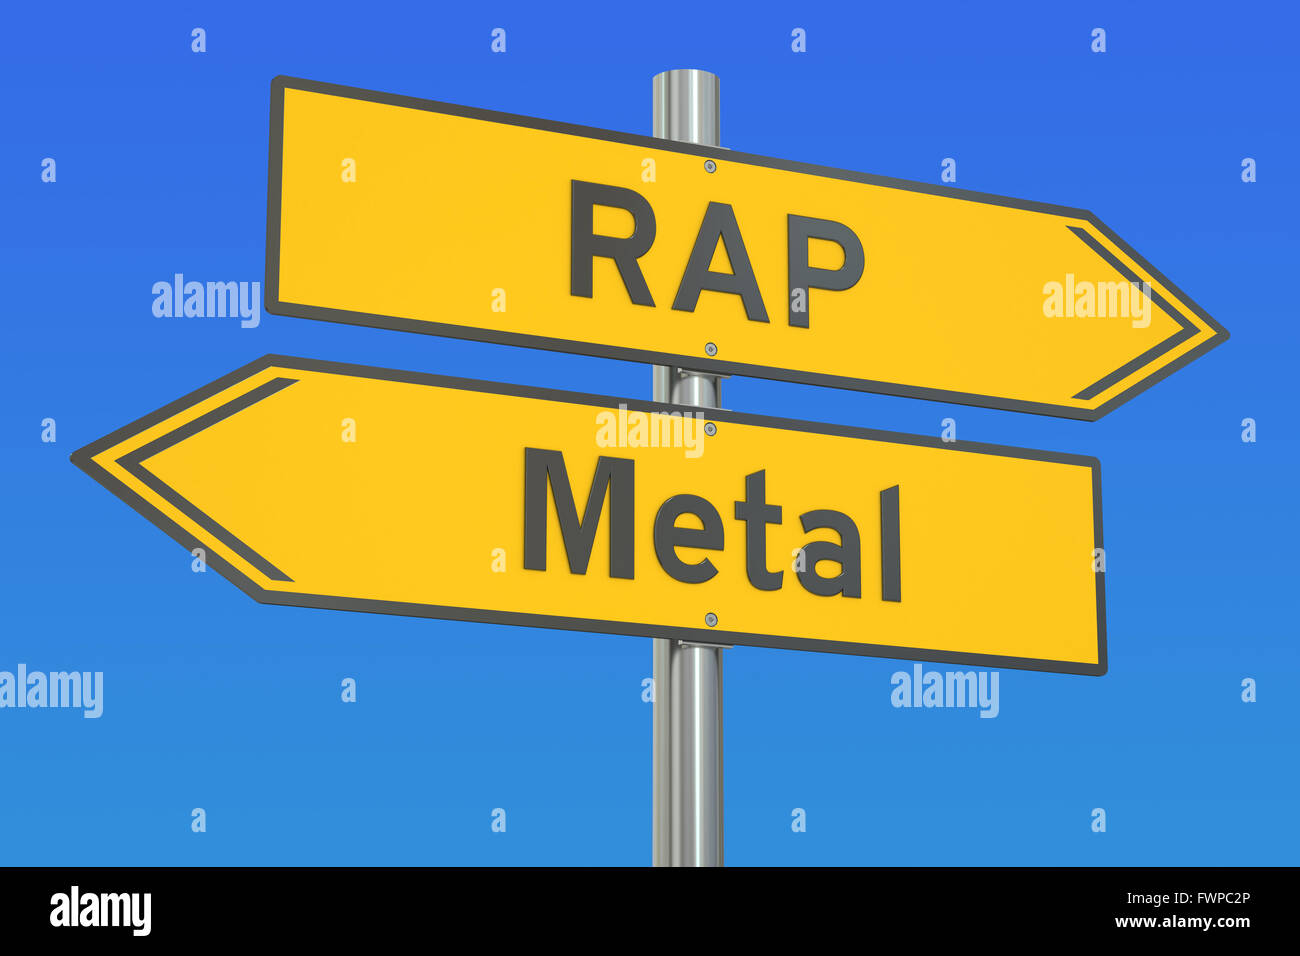 Rap im Vergleich zu Metall-Konzept, 3D rendering Stockfoto